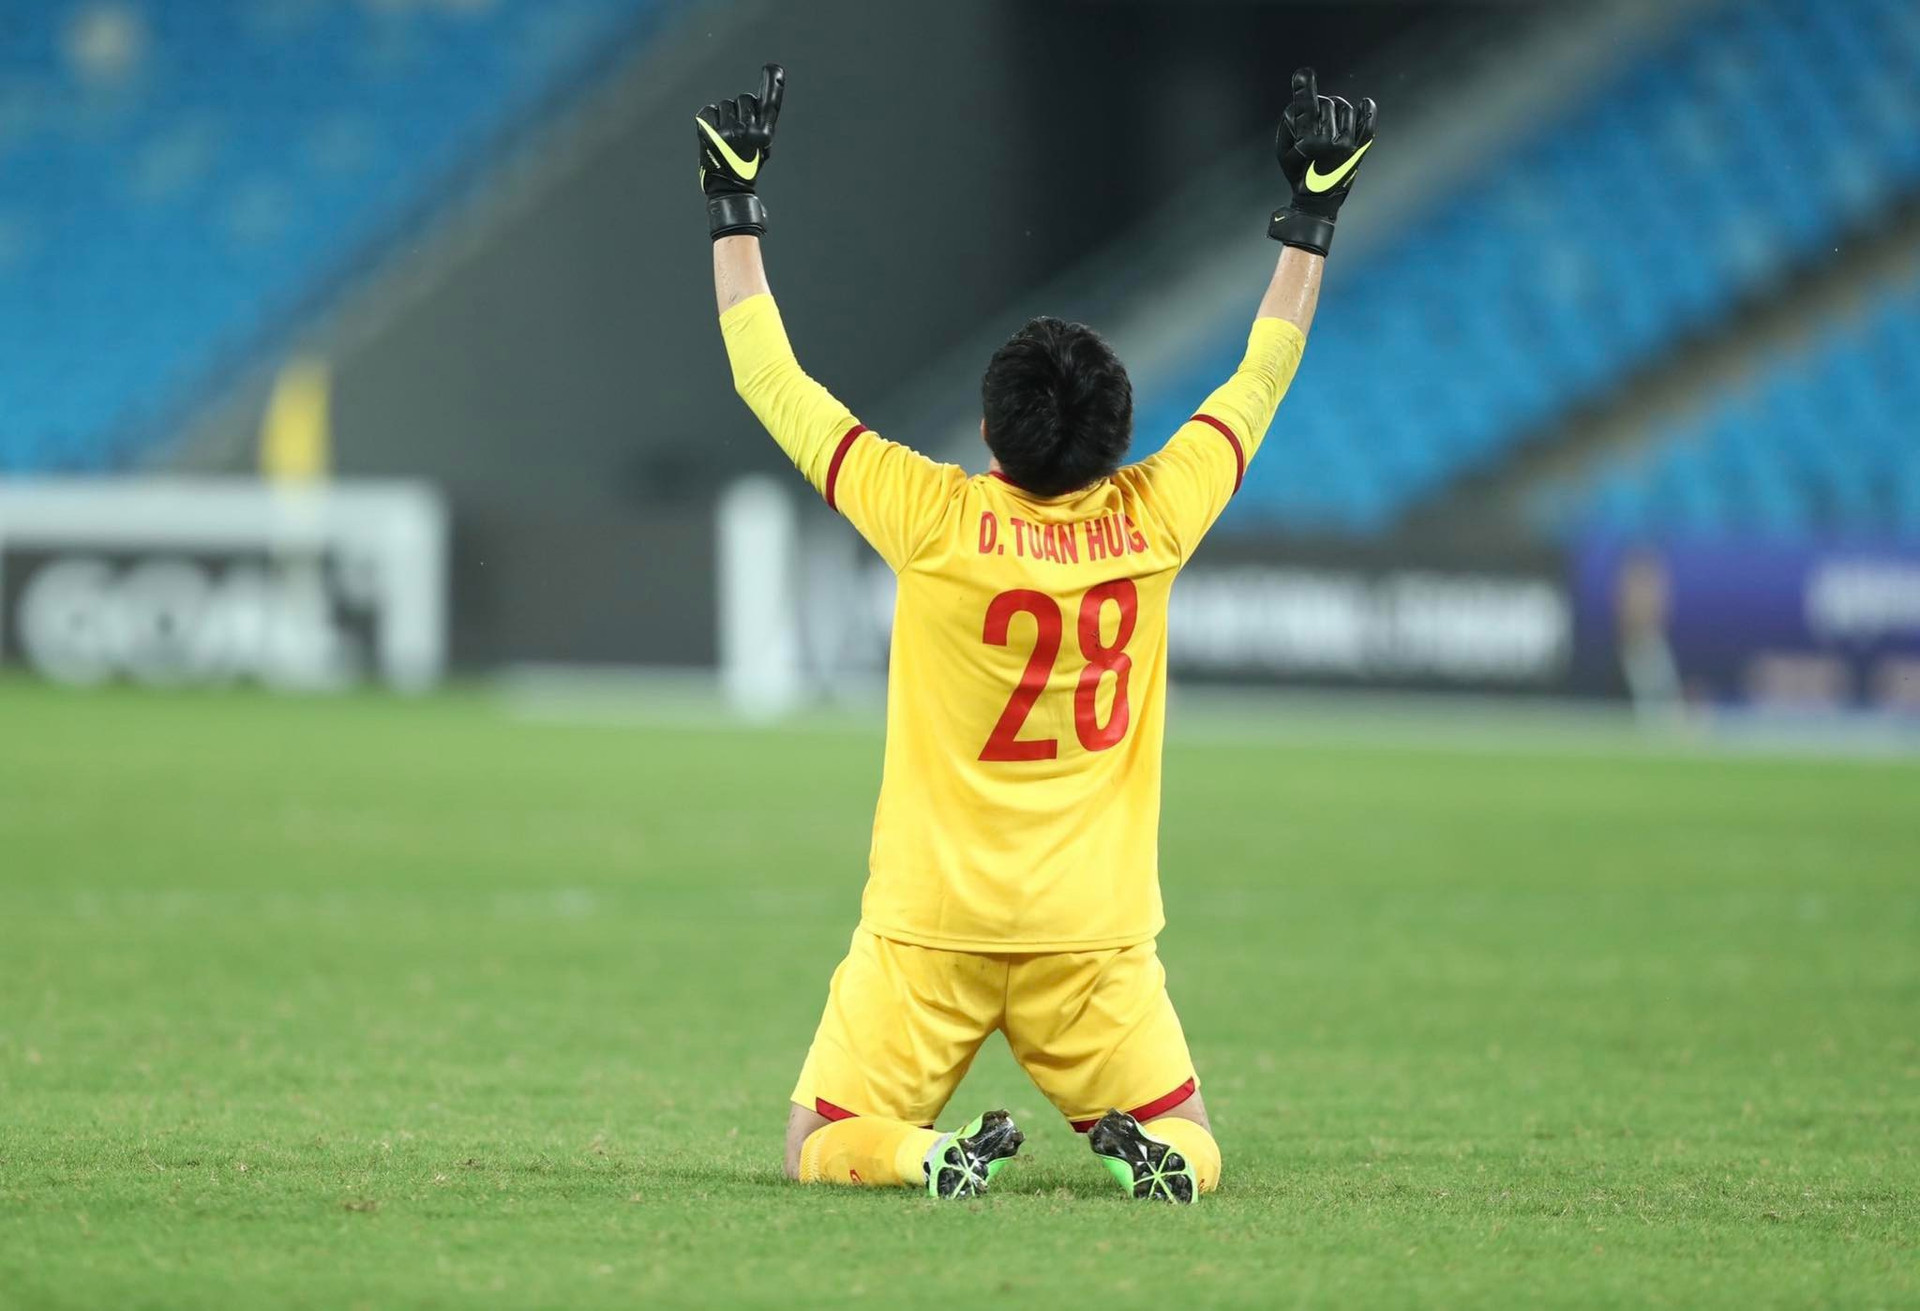 Tranh cãi đội trưởng U23 Lào giành giải cầu thủ xuất sắc nhất - 2